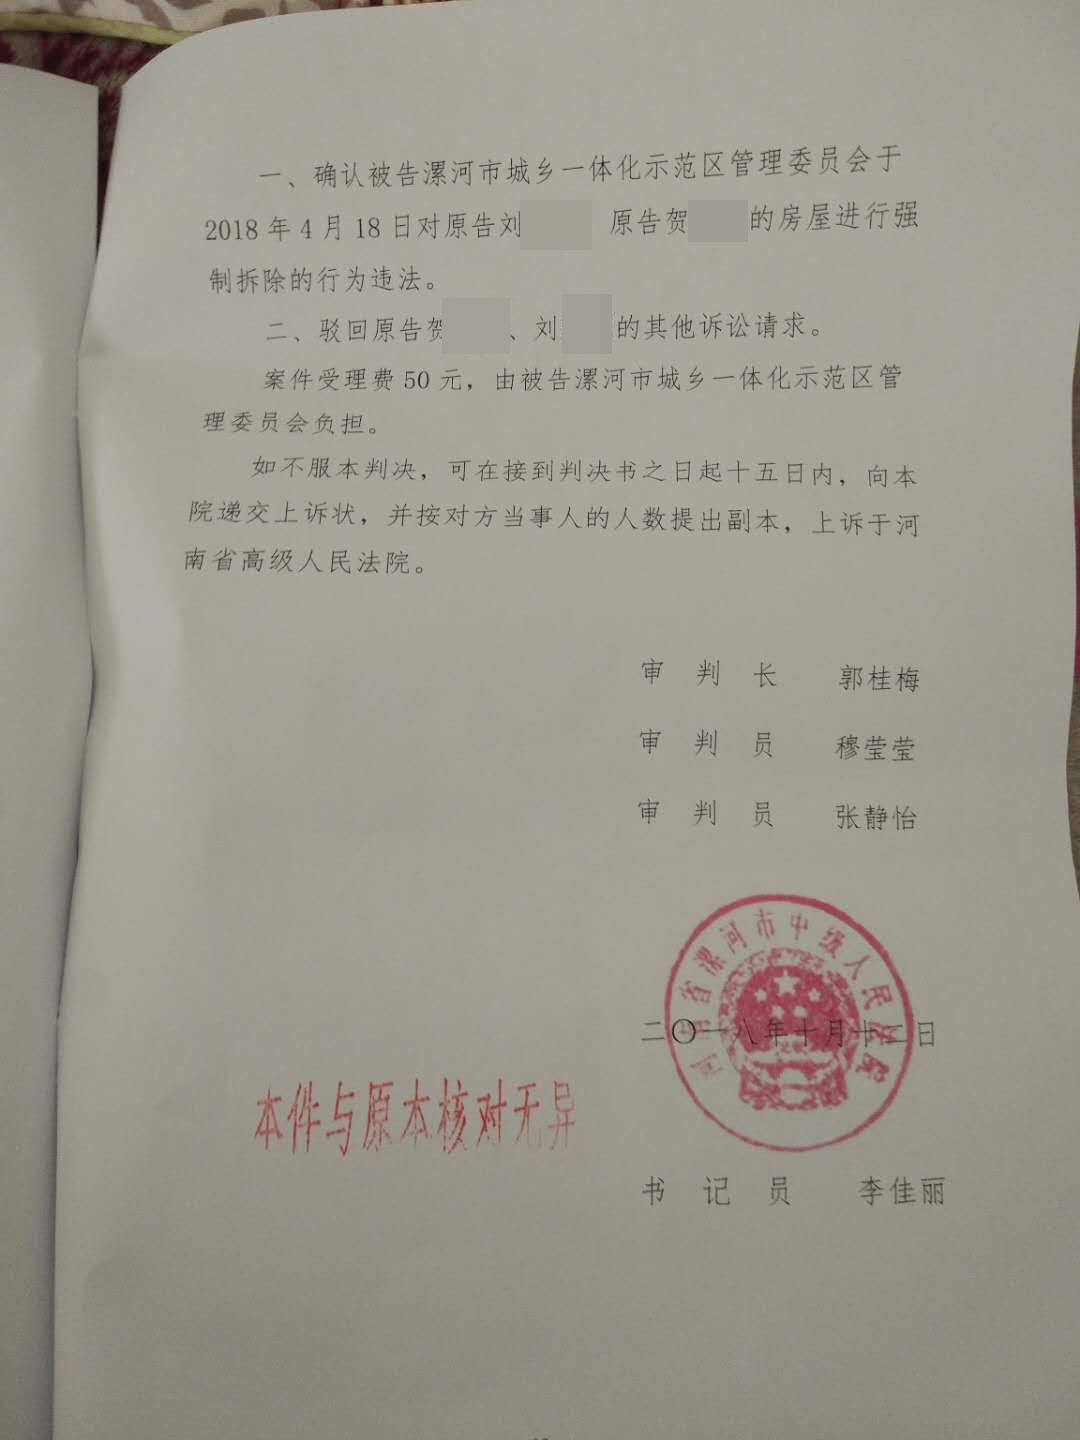 河南最新胜诉判决：“管委会”为适格被告，确认强拆村民房屋违法！